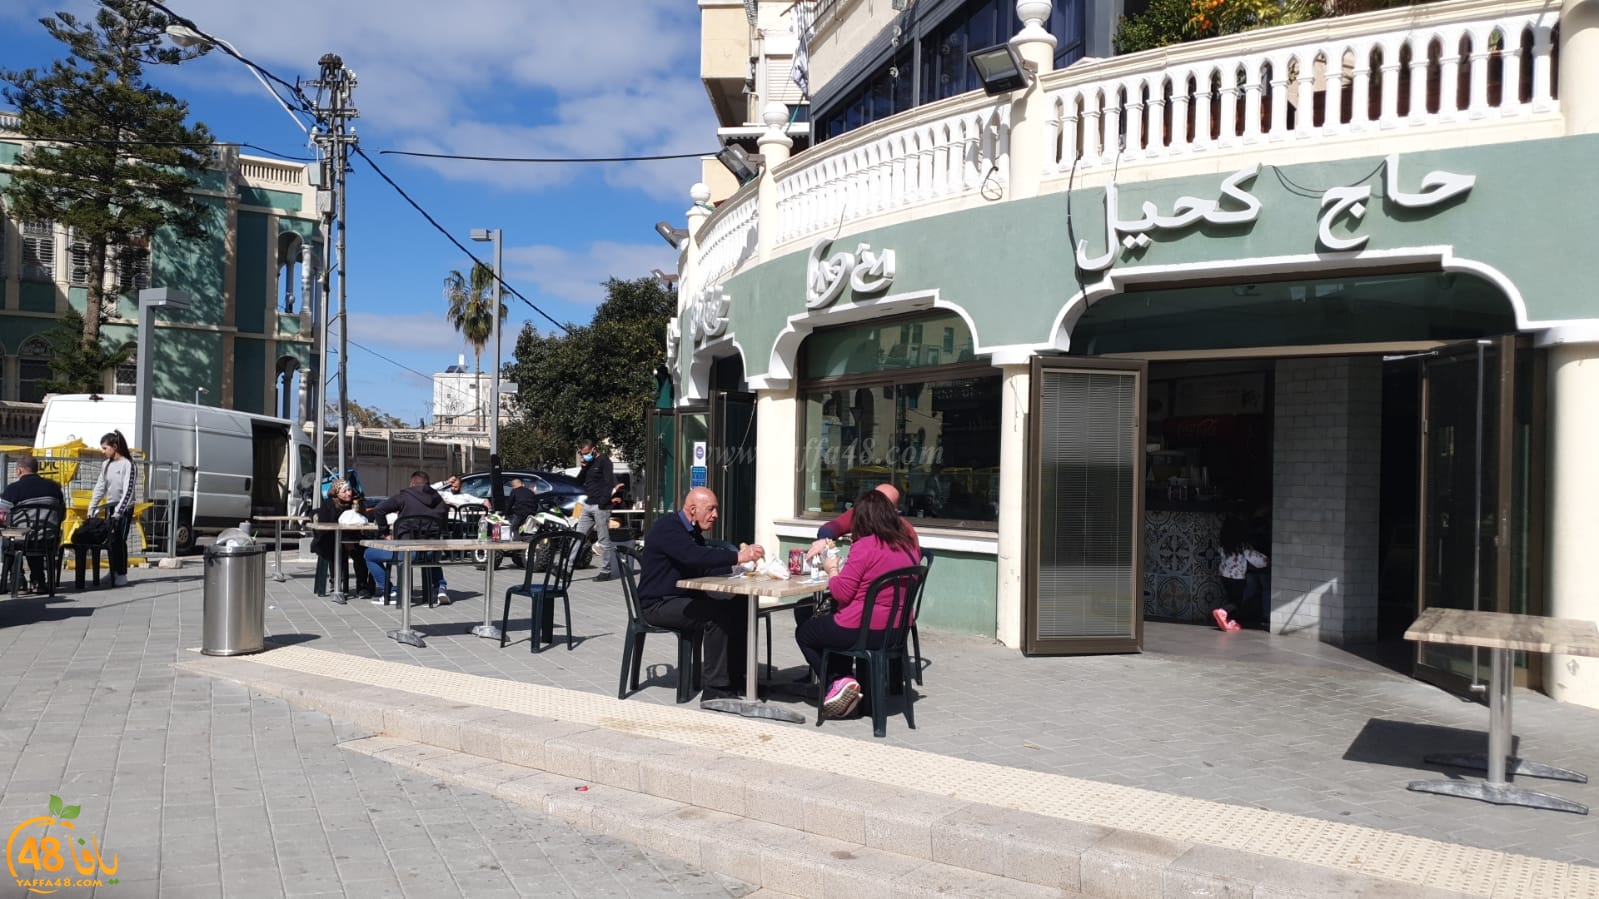  بعد أشهر من الاغلاق - مطاعم مدينة يافا تفتح أبوابها وتستقبل زبائنها